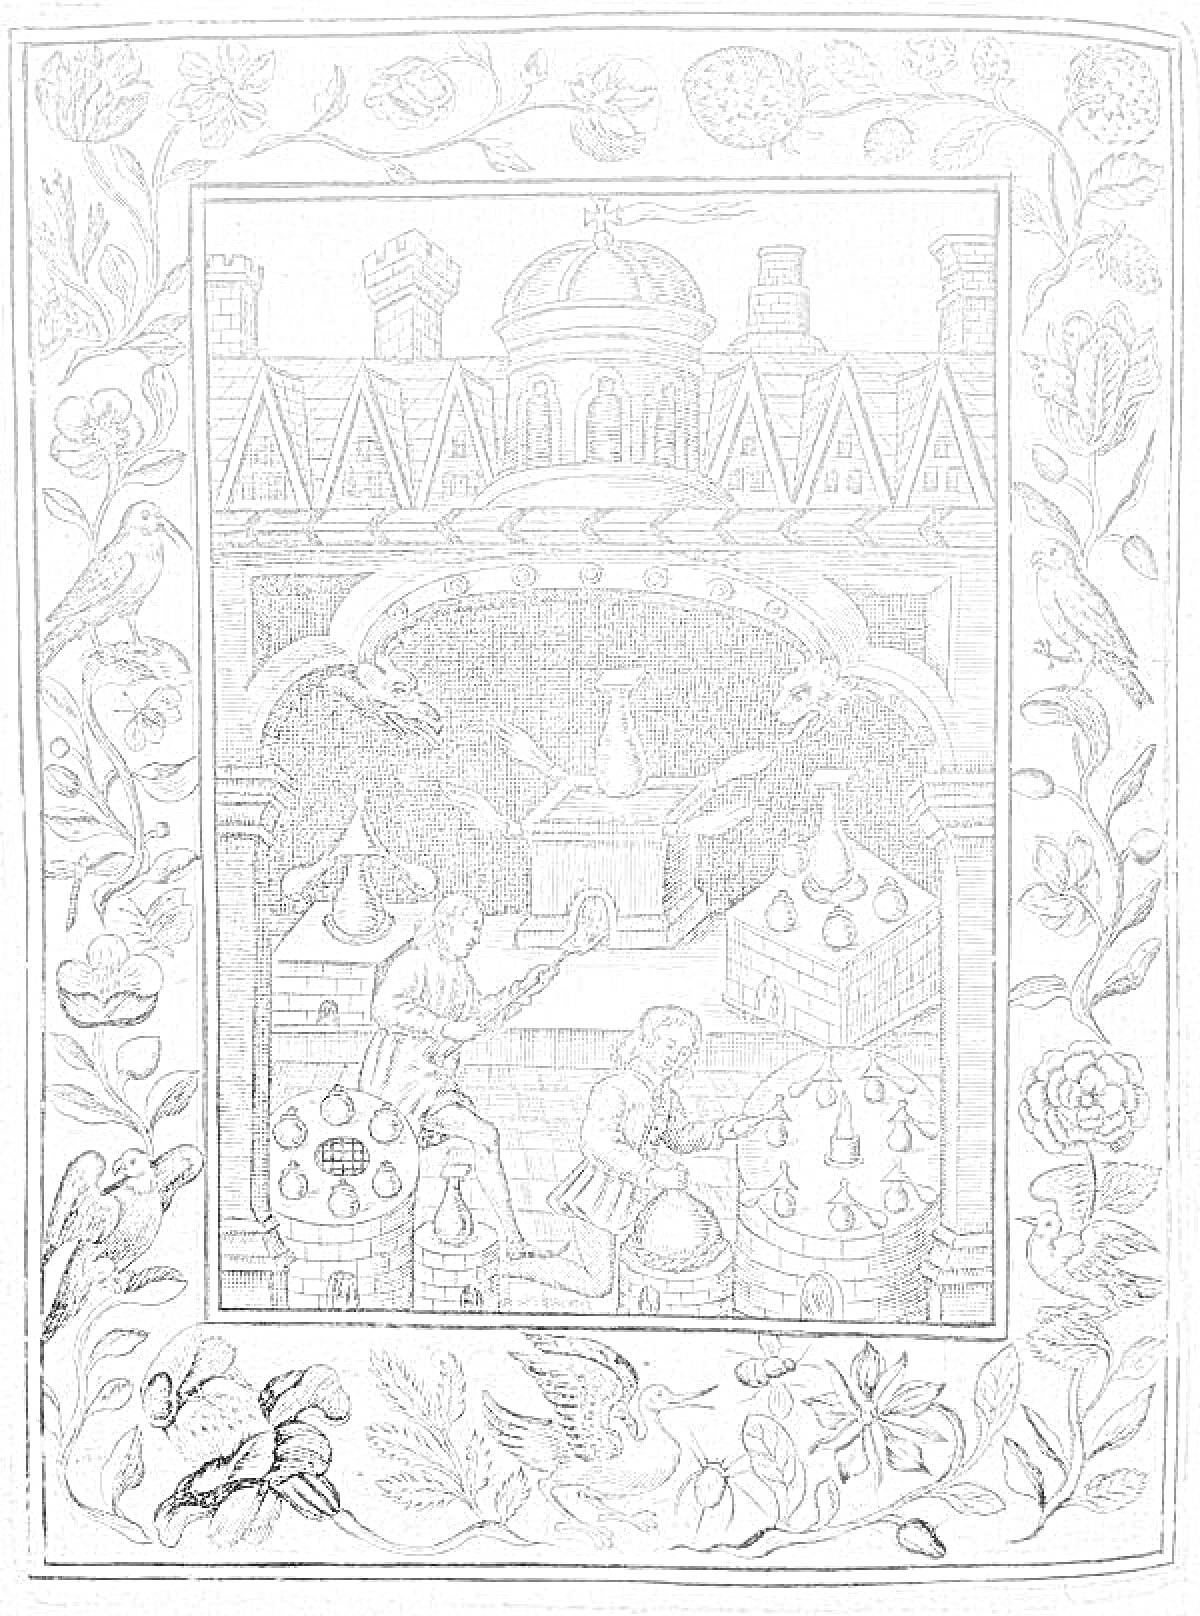 Раскраска Кабинет алхимика в средневековом замке с изображением сокровищ, реторты и алхимических инструментов, окружённый рамкой с узором из цветов, птиц и листьев.